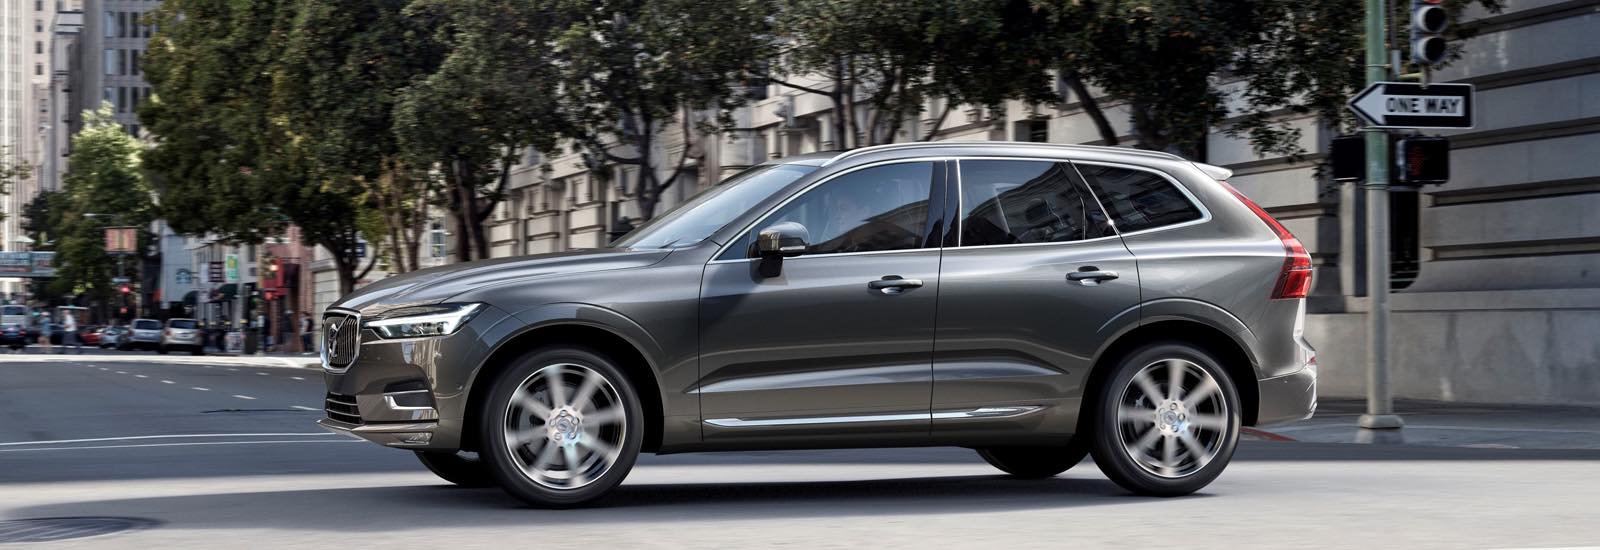 Volvo ще произвежда електромобили в Китай